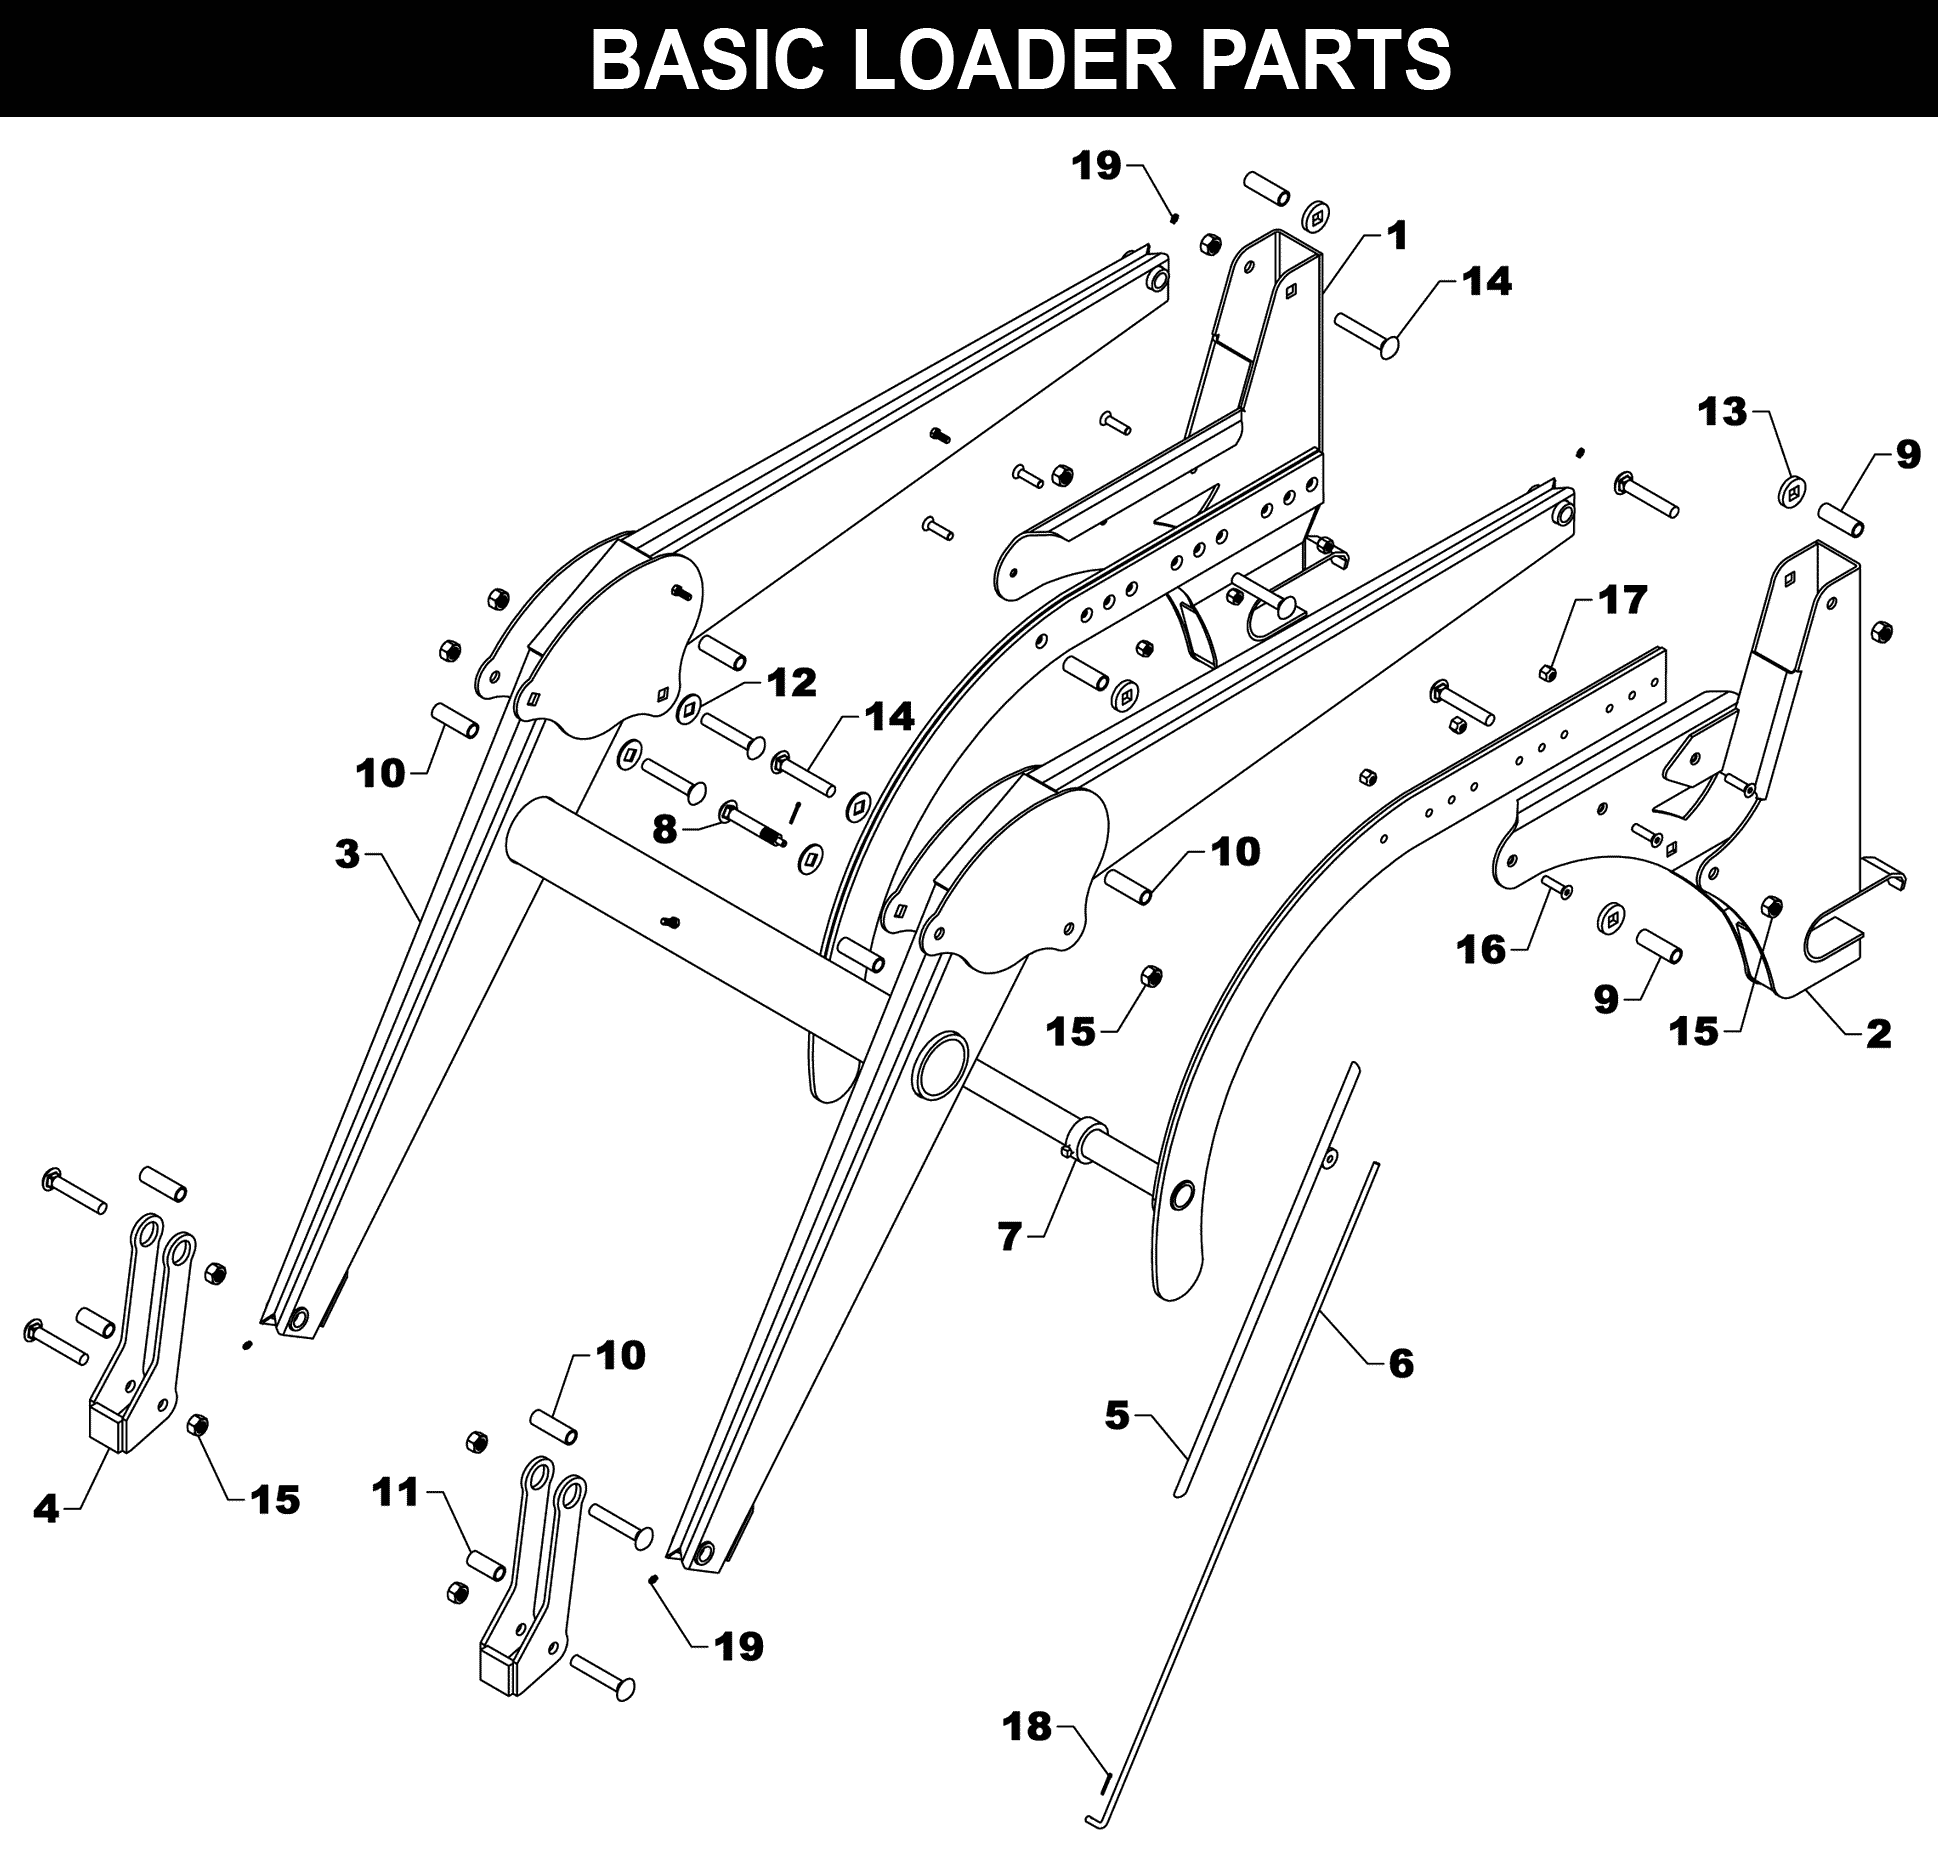 TA-160 Basic Loader Parts